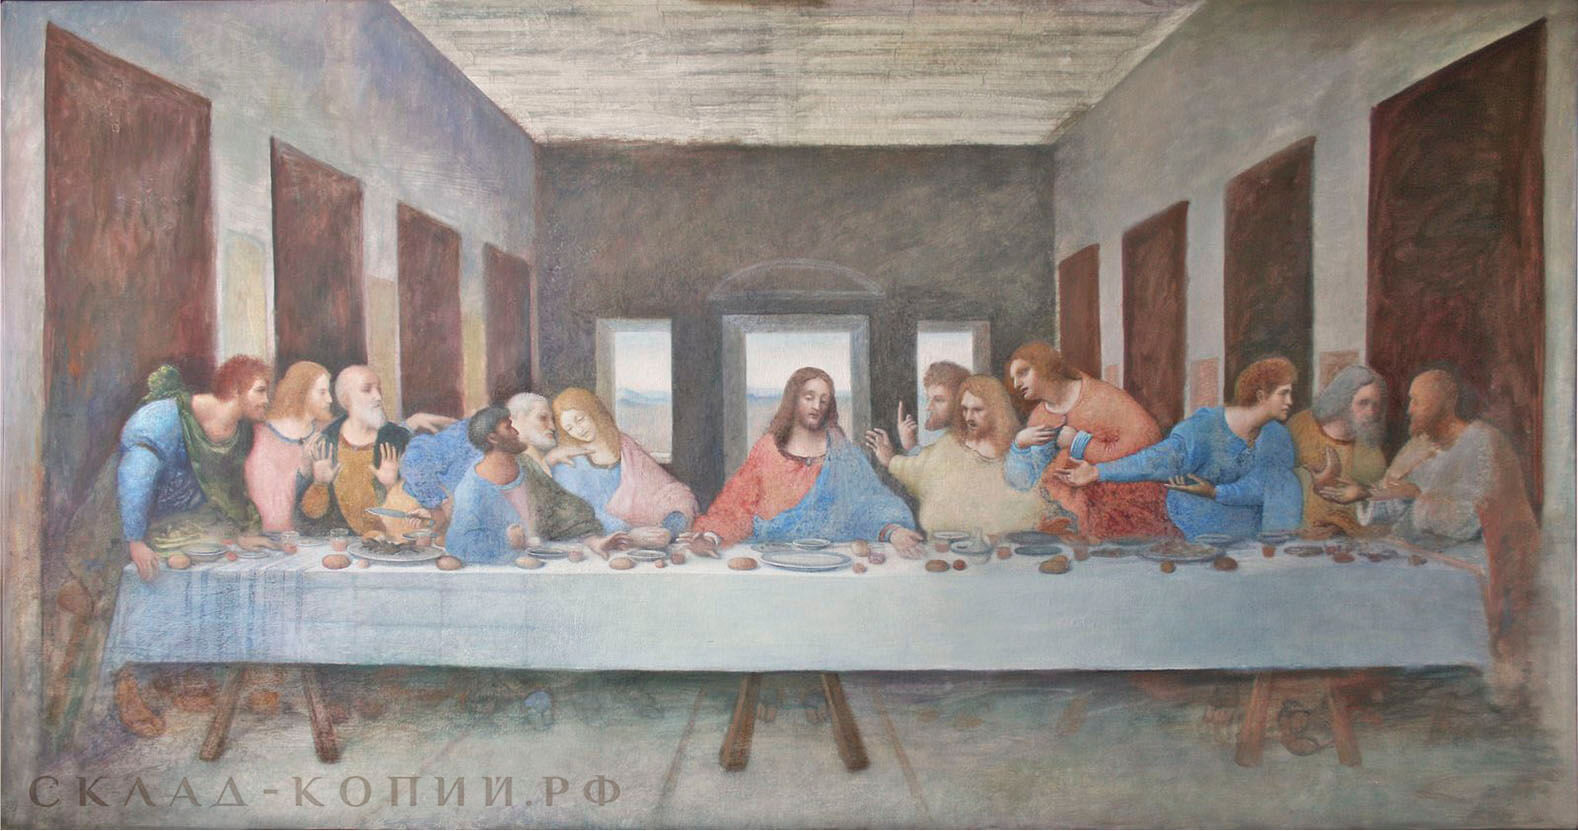 Леонардо да Винчи, Тайное вечеря, копия картины, пропись переднего плана, 1 этап